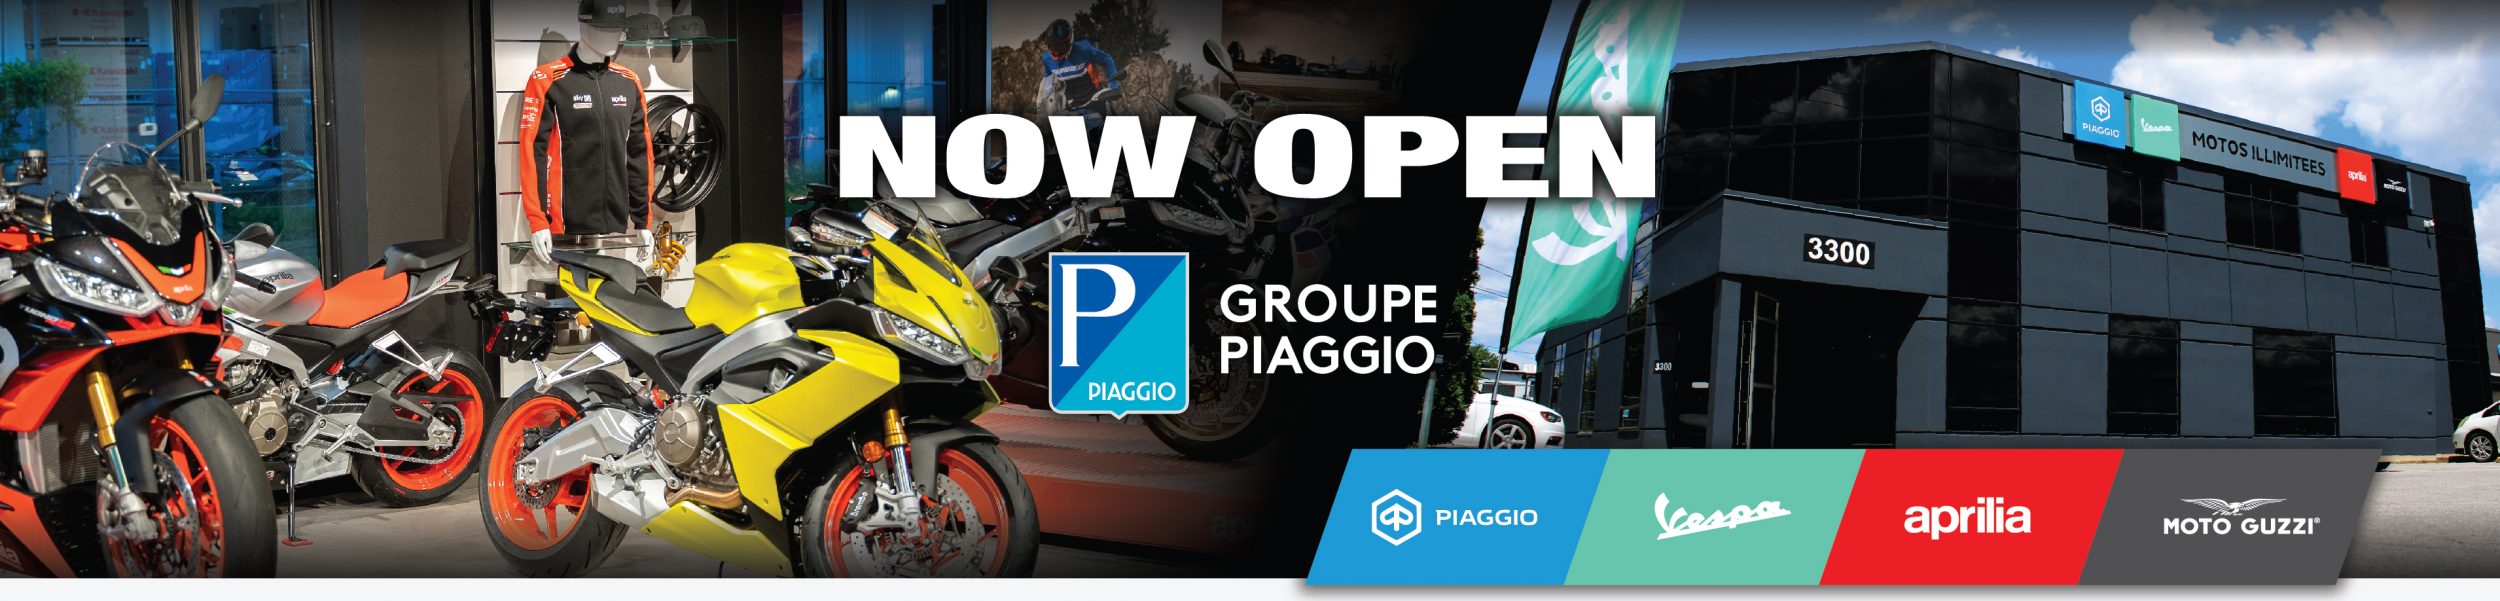 now open – piaggio